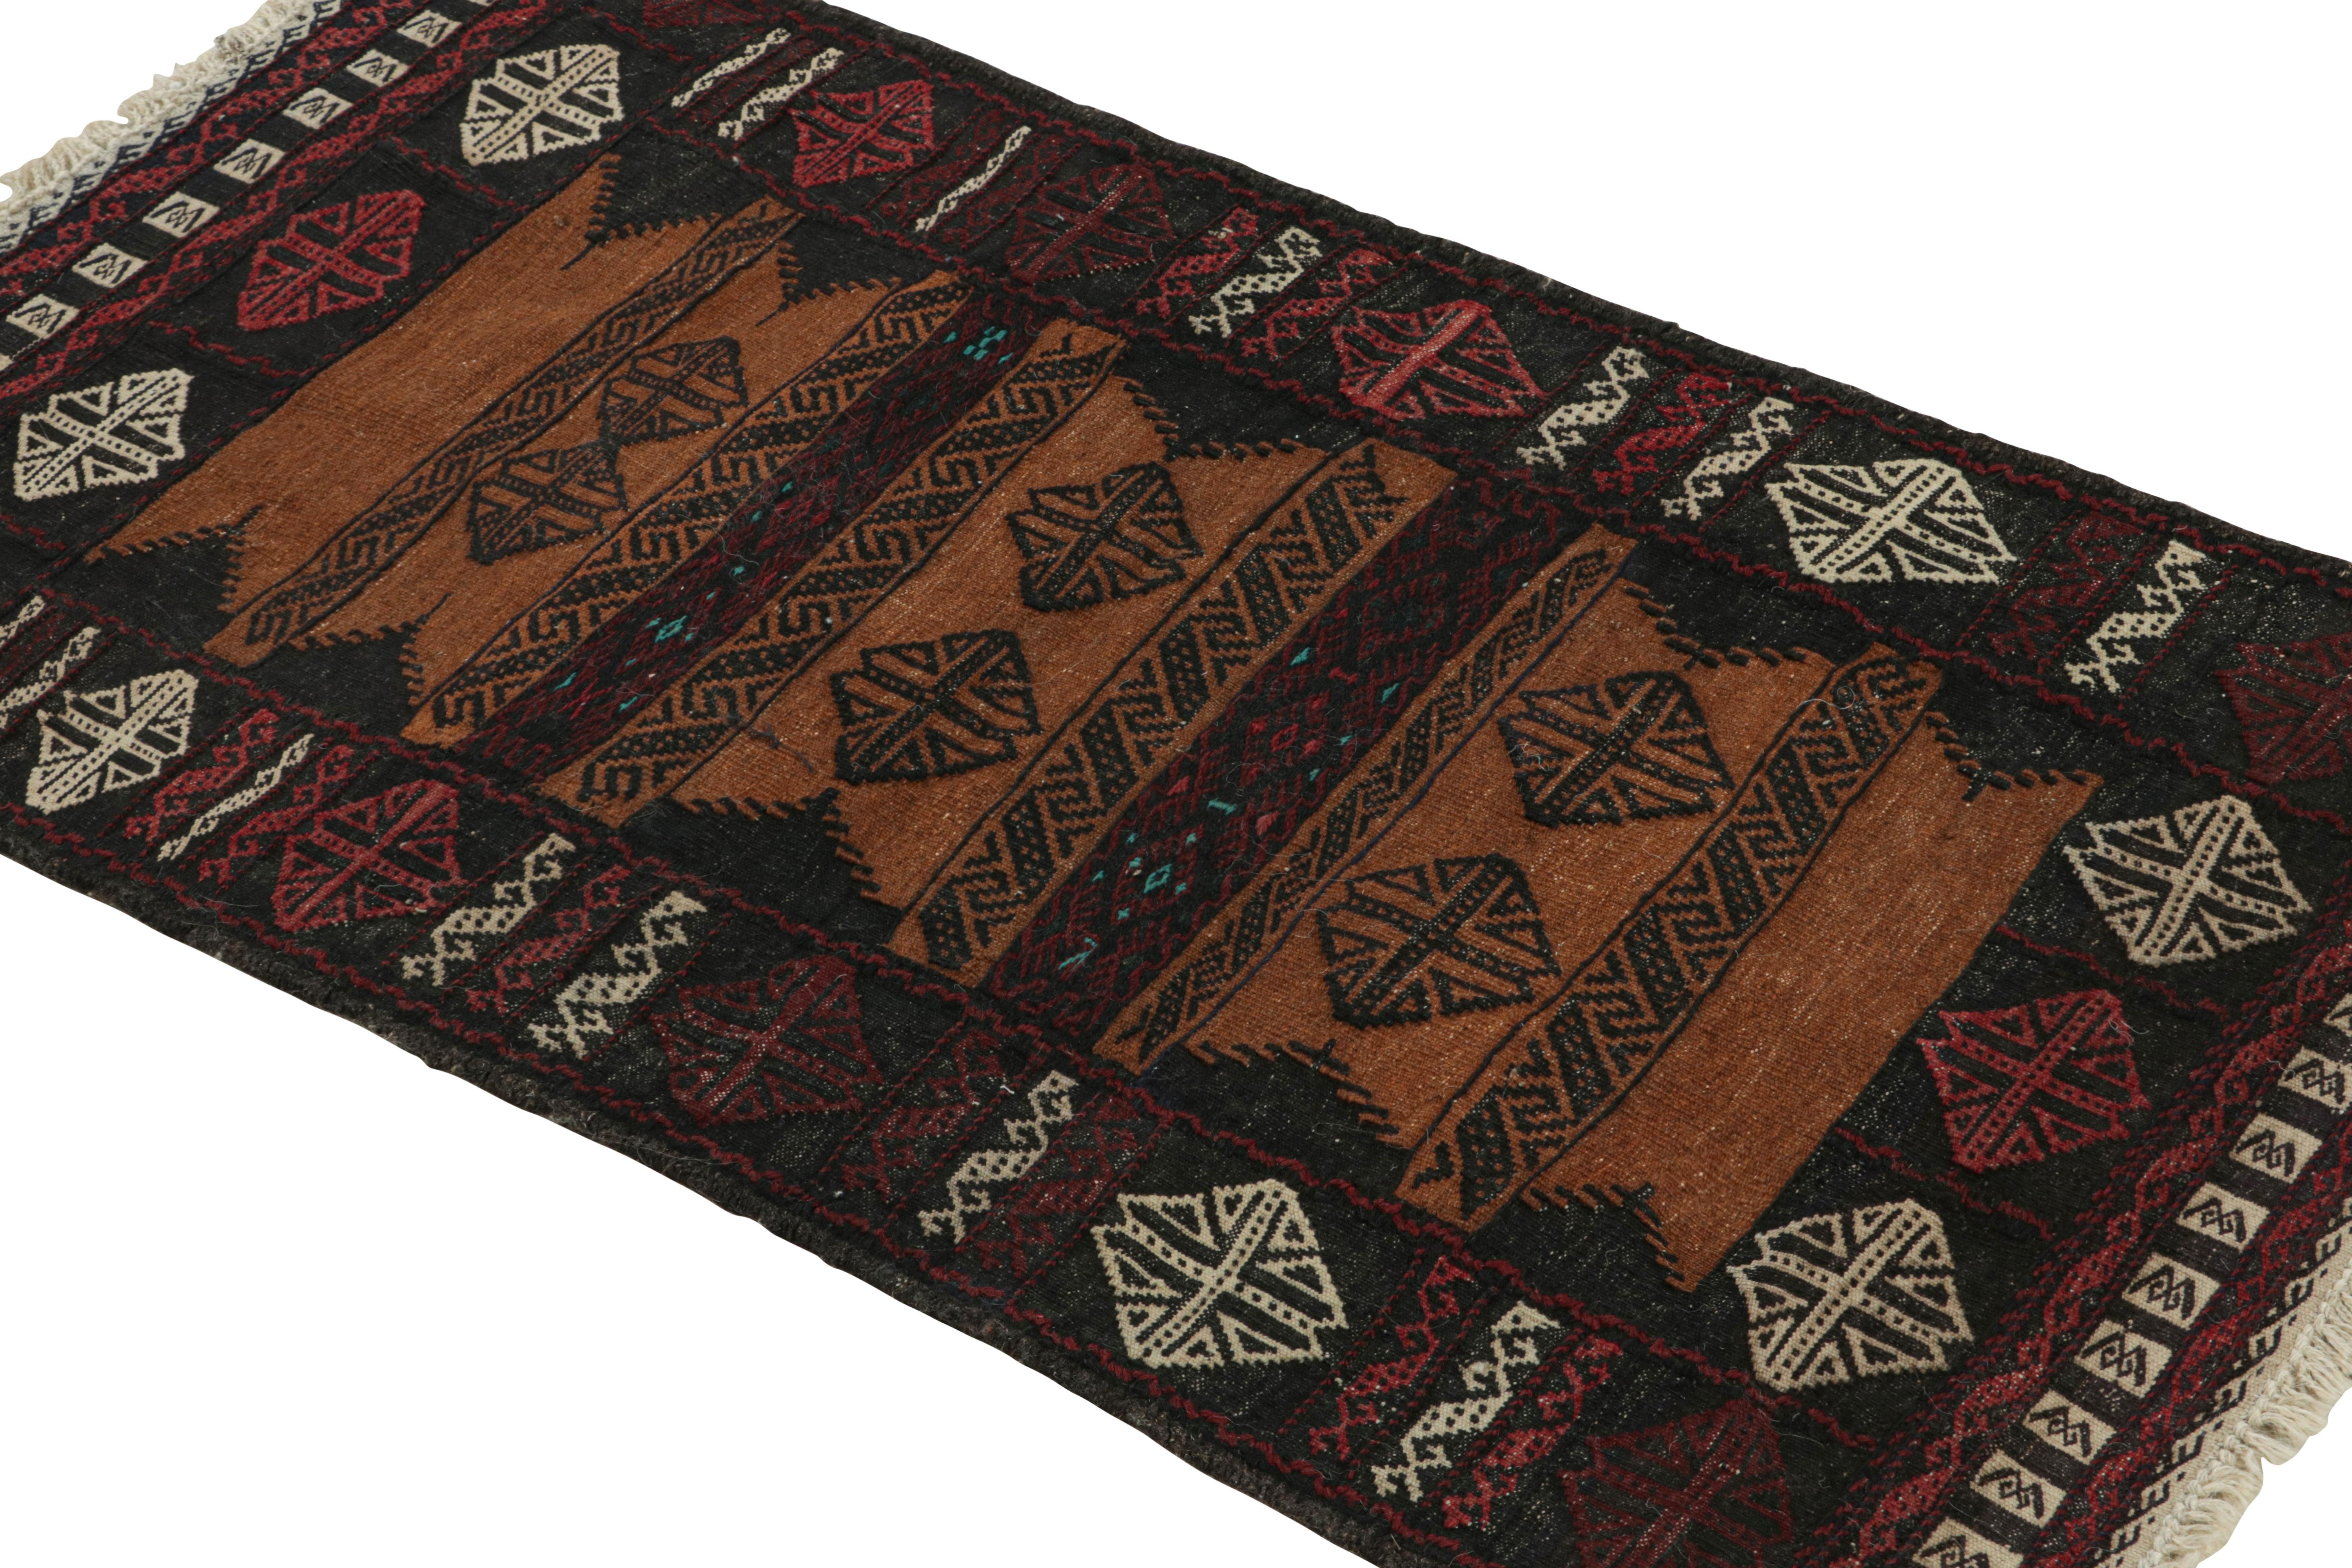 Tissé à la main en laine, ce tapis kilim afghan vintage 2x4 date des années 1950-1960. Il s'agit d'une collection tribale parmi les nouveaux ajouts à la collection Rug & Kilim.

Sur le Design :

Un coloris polychrome aux teintes riches et vibrantes